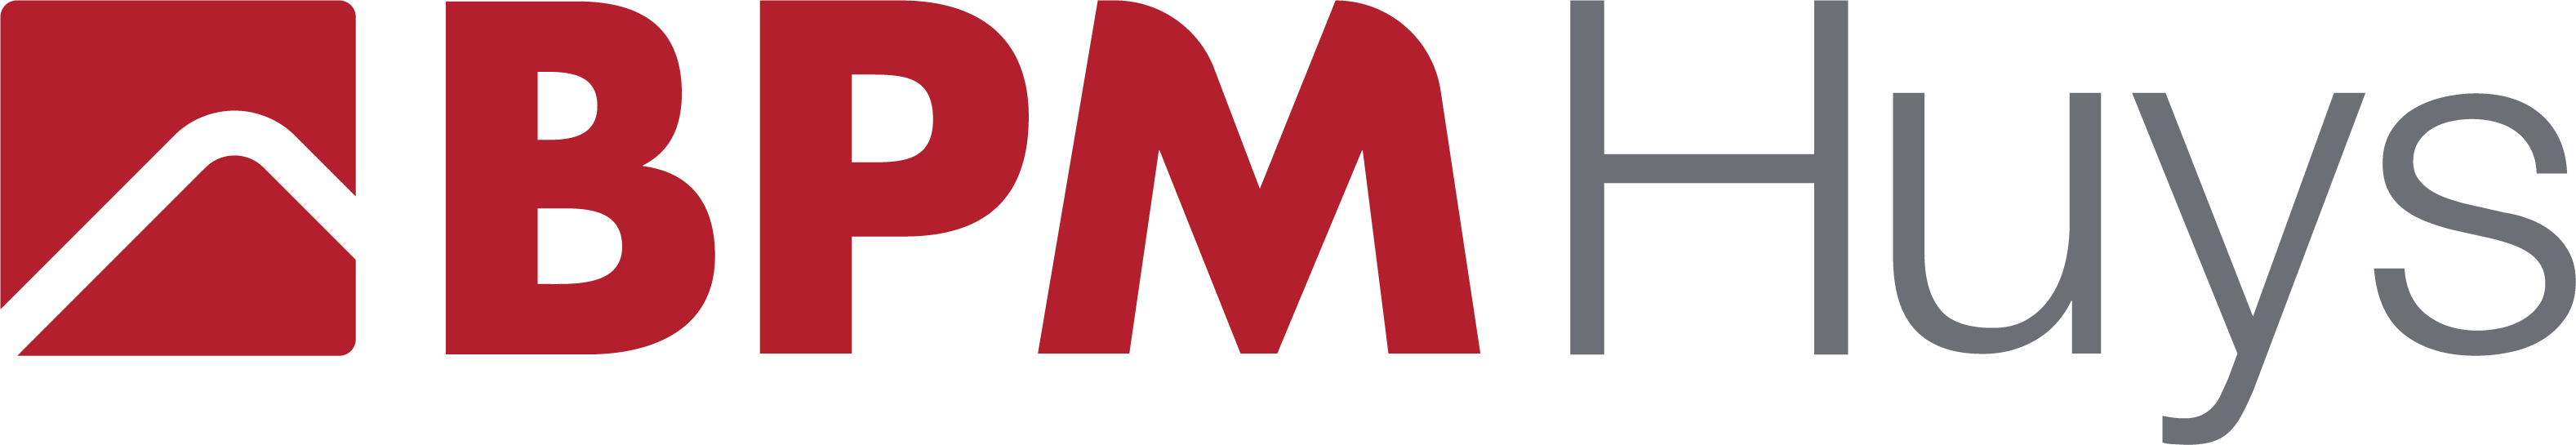 BPM Huys logo